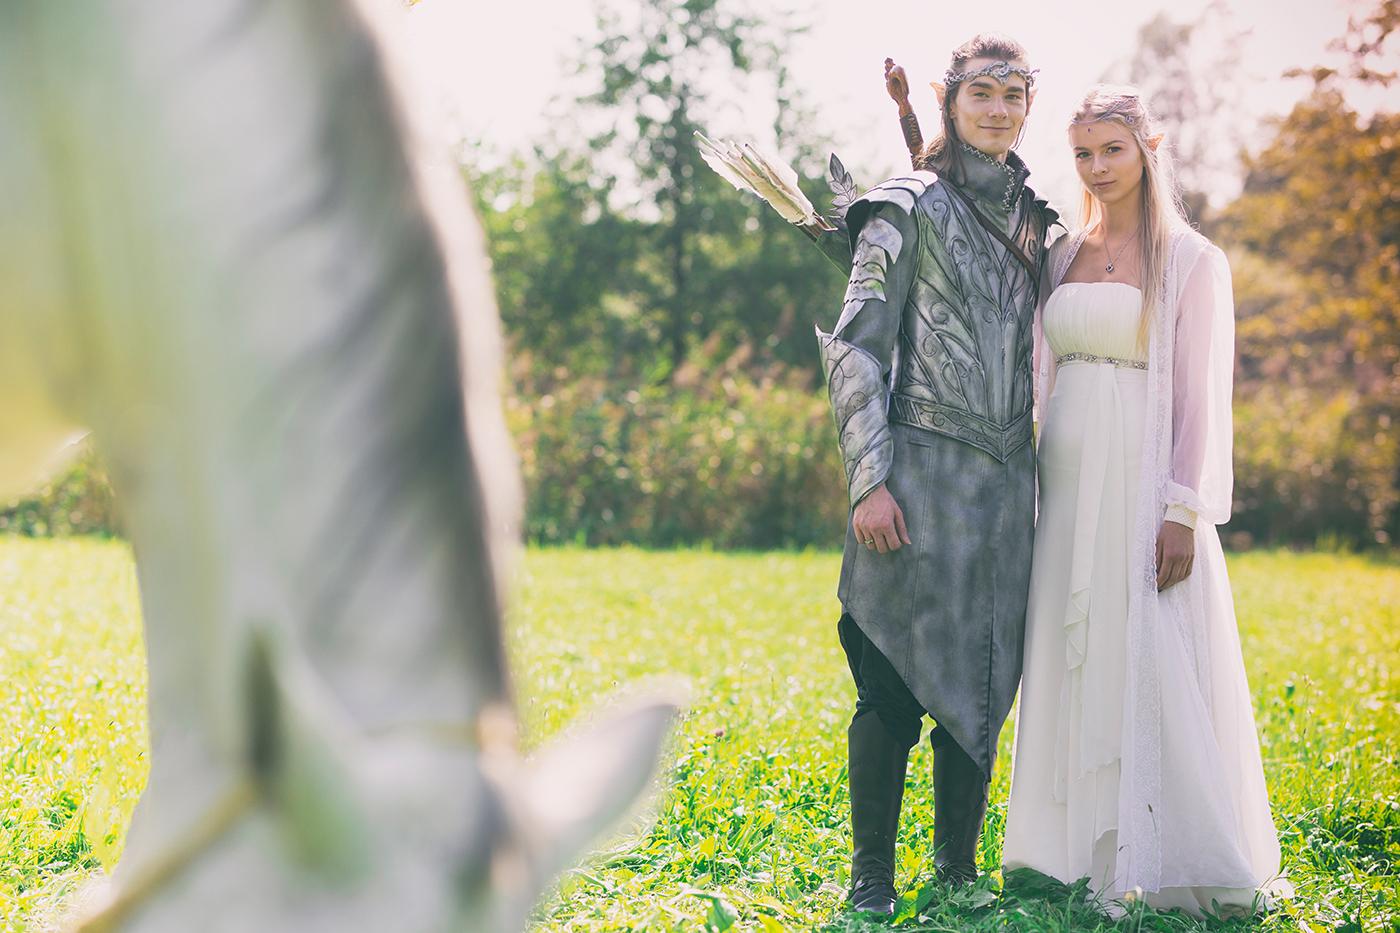 Od dawna tliła mi się wizja na sesje ślubną w stylu fantasy. Elfy, ponieważ są moimi ulubionymi postaciami fantasy.